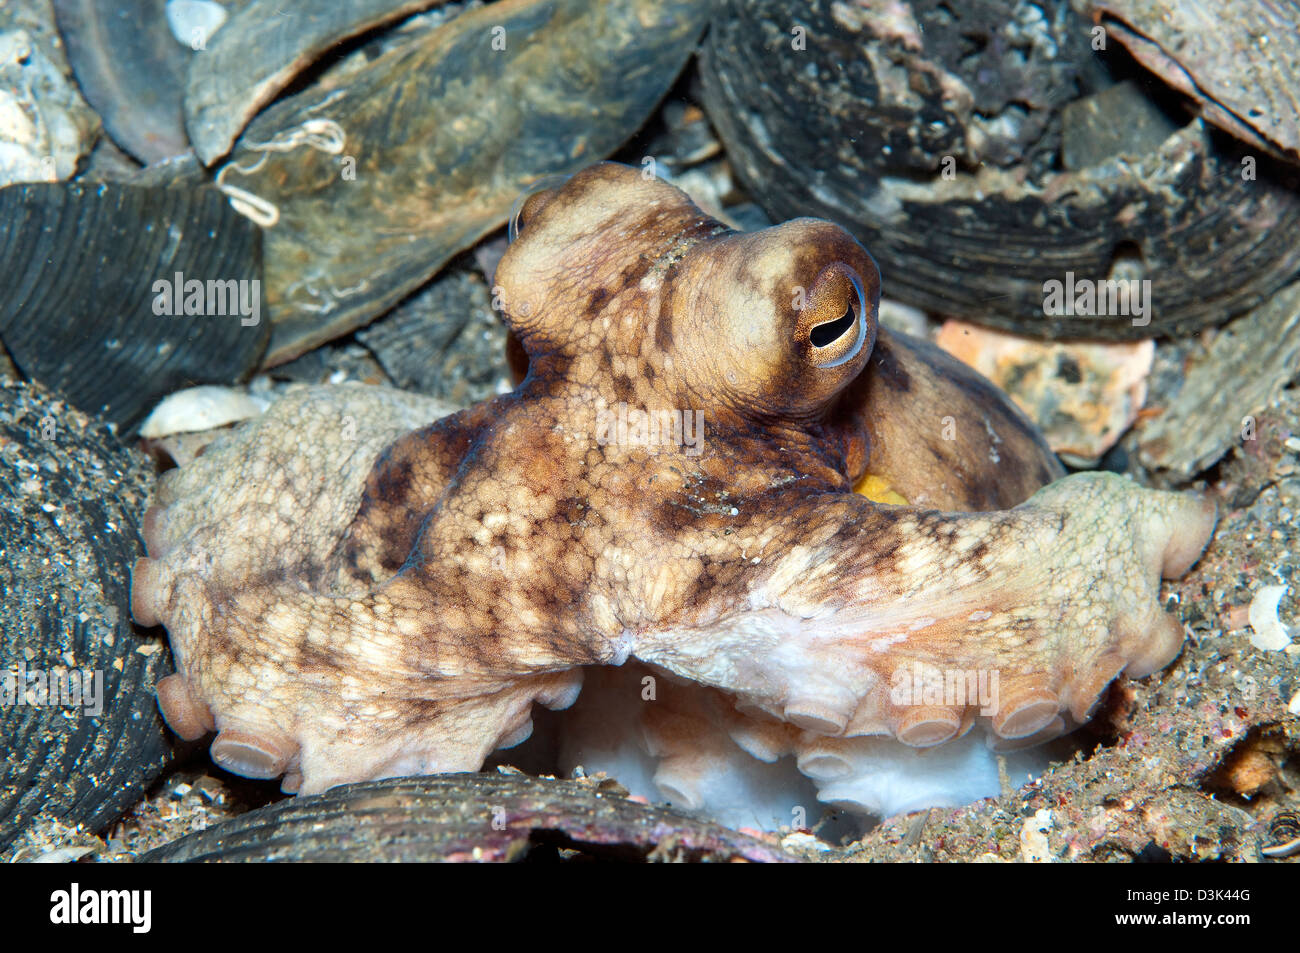 Atlantic Octopus in shell debris on ocean floor, North Carolina. Stock Photo